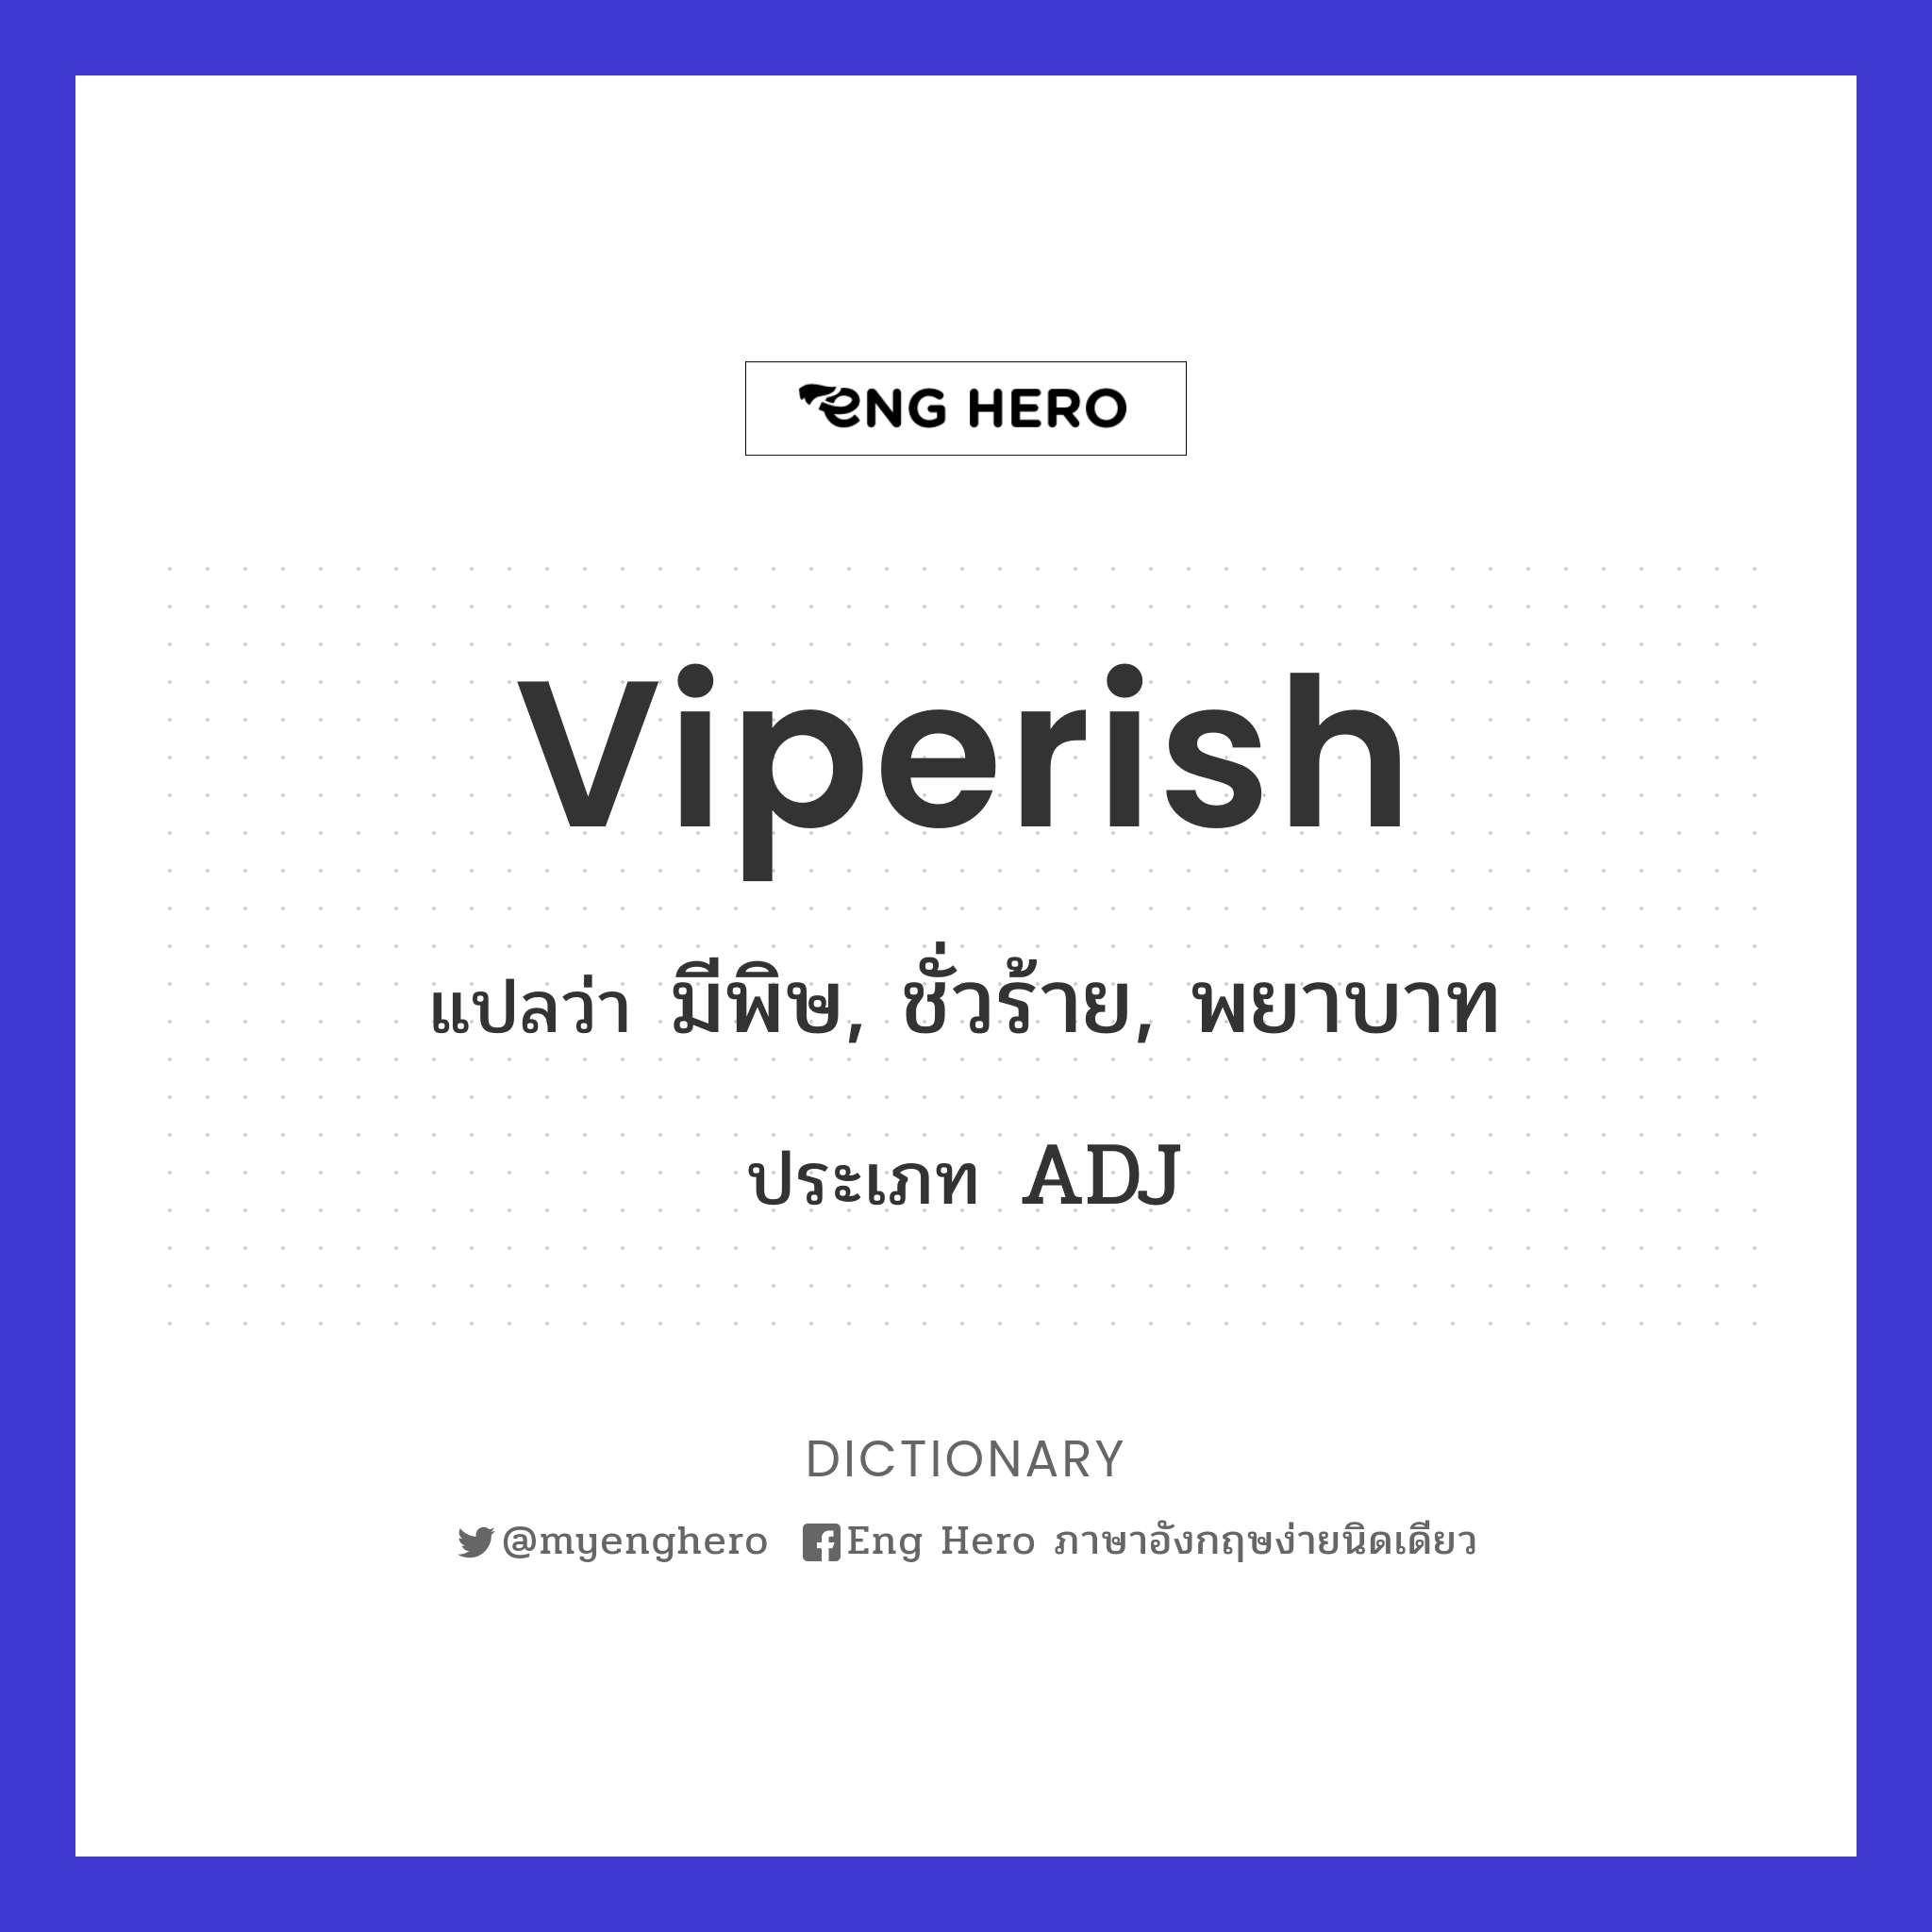 viperish